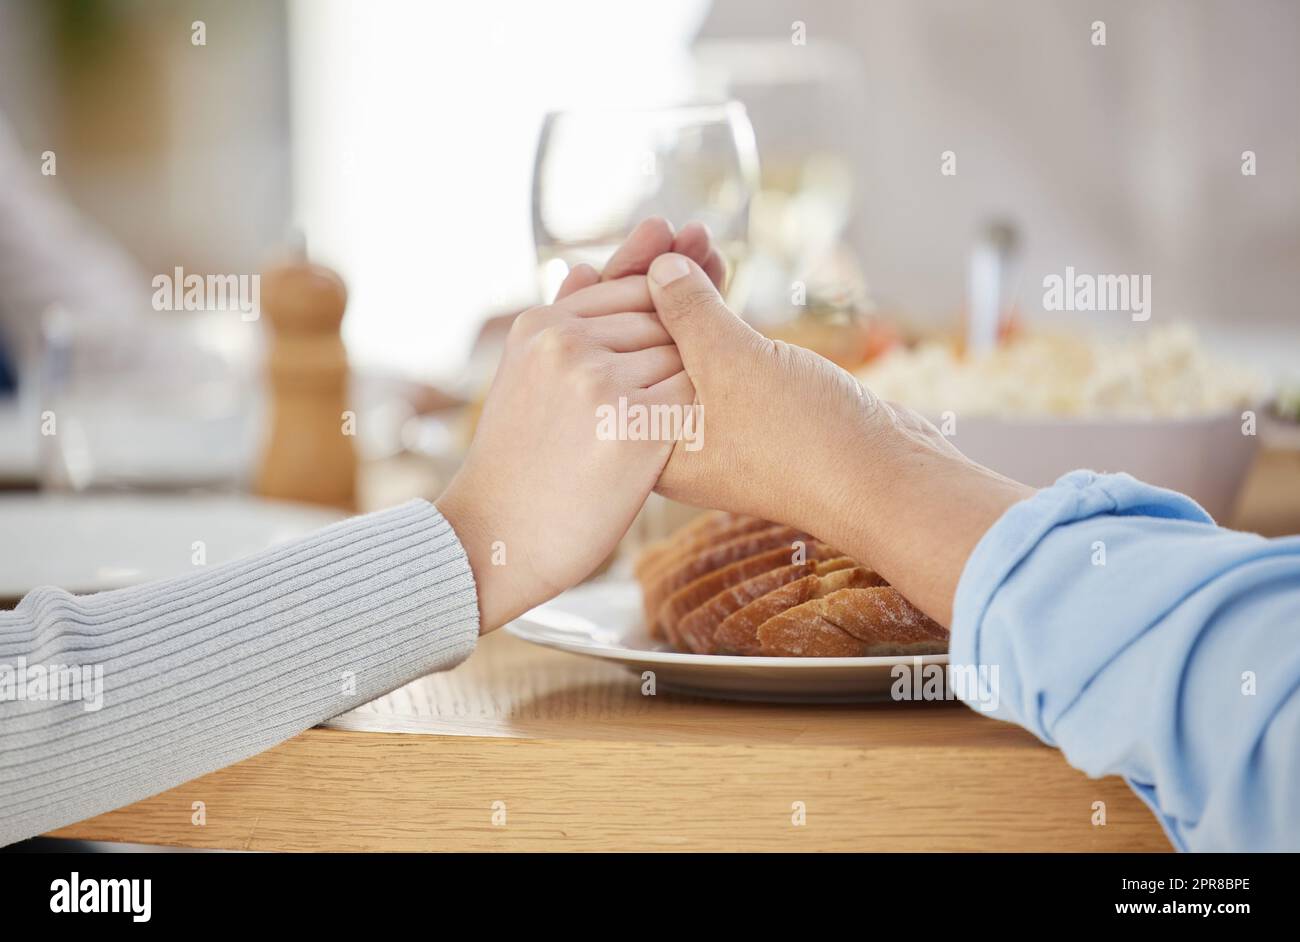 Familien, die zusammen beten, kommen zusammen in den Himmel. Zwei unkenntliche Menschen halten sich am Esstisch zu Hause die Hände. Stockfoto